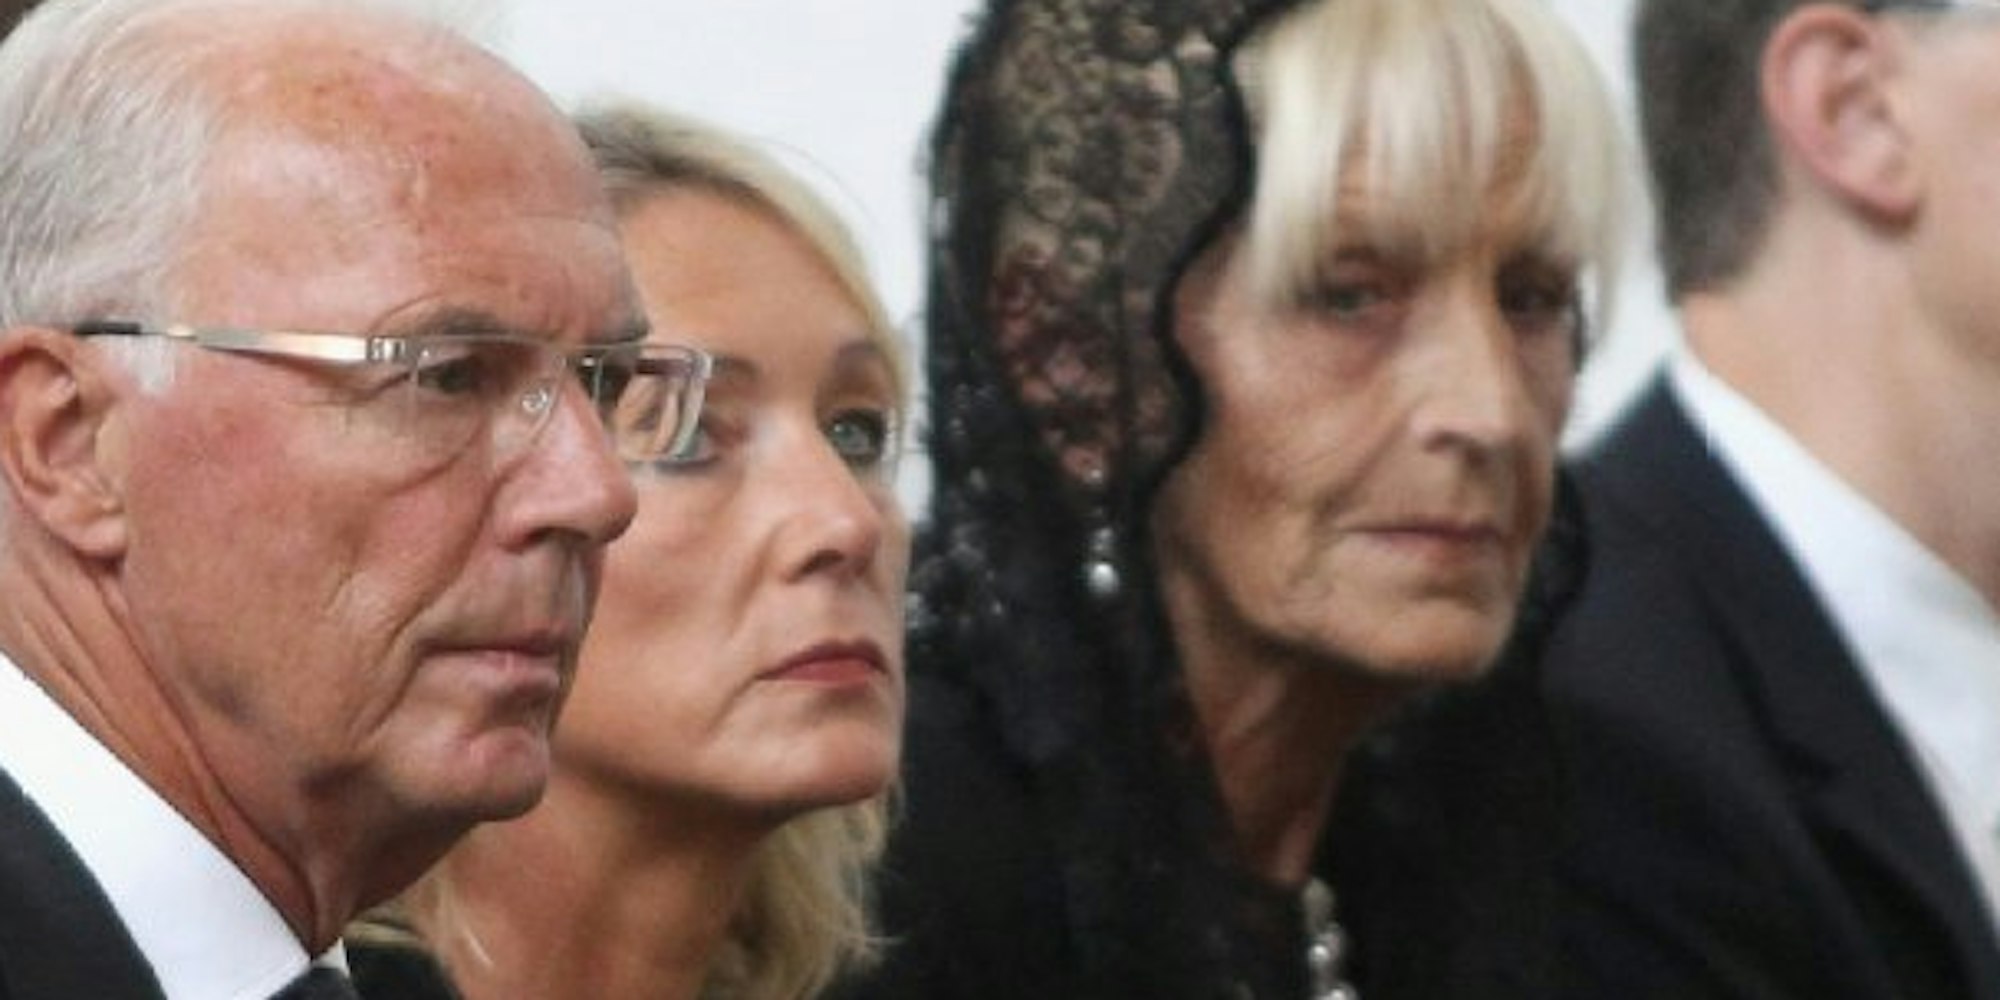 Franz Beckenbauer (2. von links) mit Ehefrau Heidi und Ex-Frau Brigitte auf der Trauerfeier